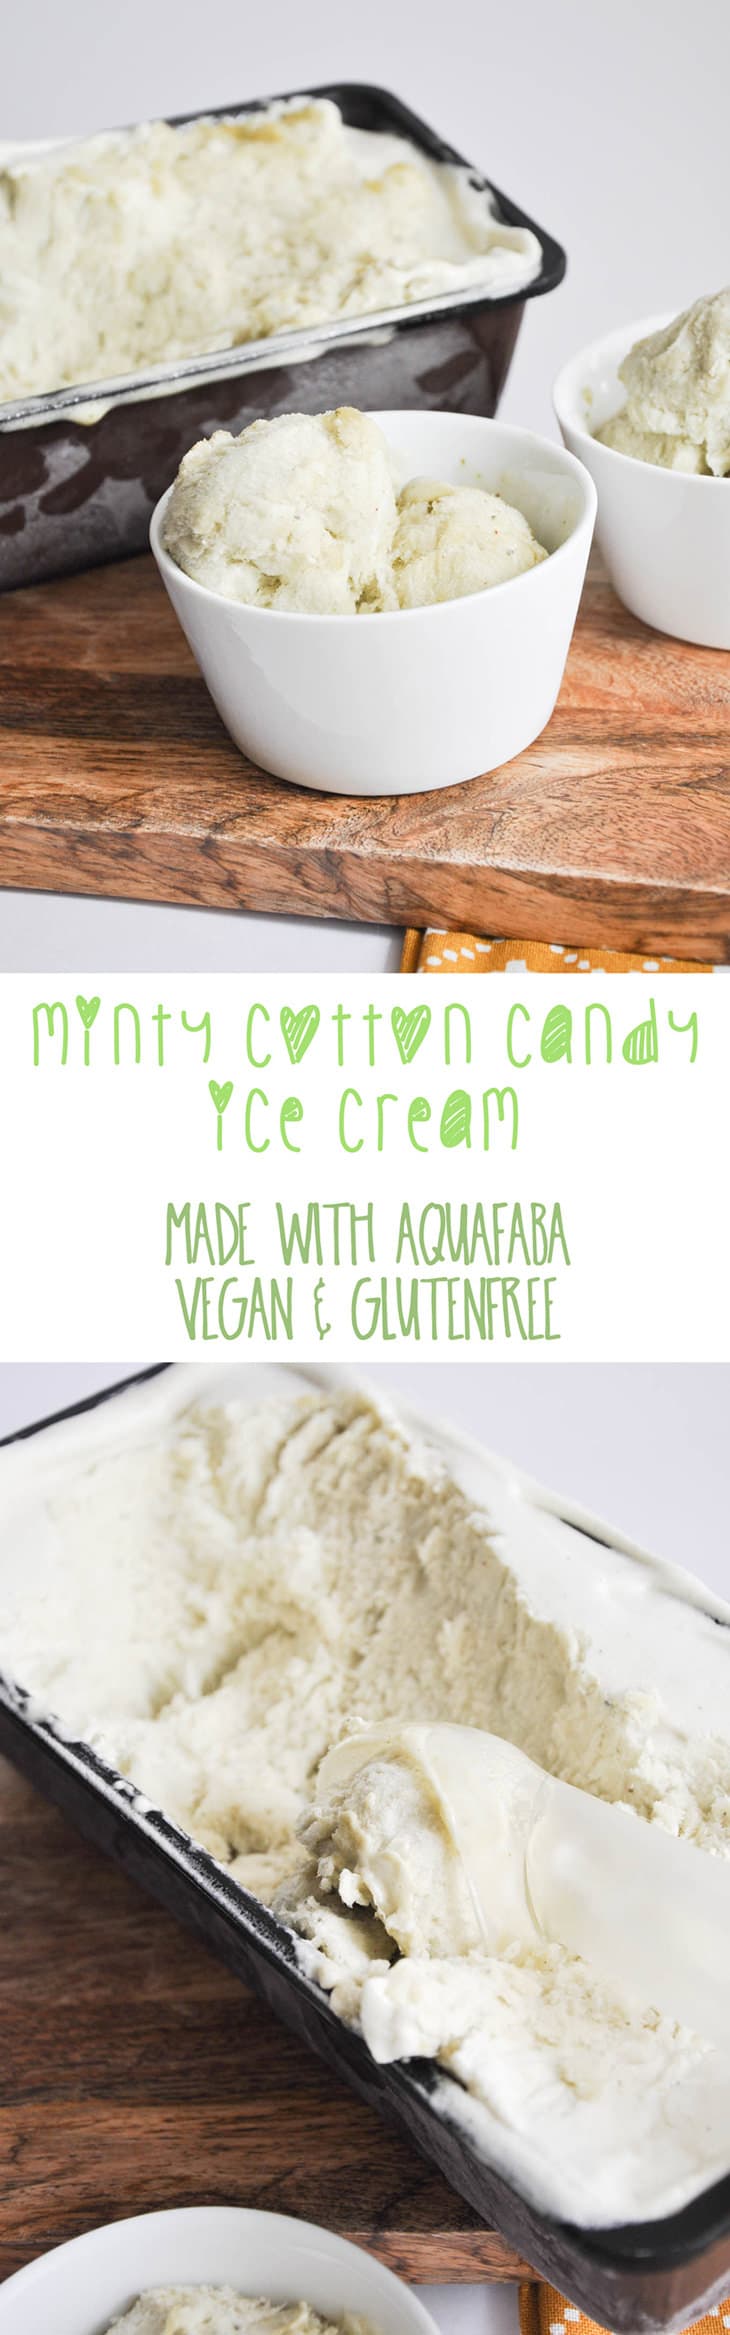 Vegan Minty Cotton Candy Ice Cream made with Aquafaba | ElephantasticVegan.com